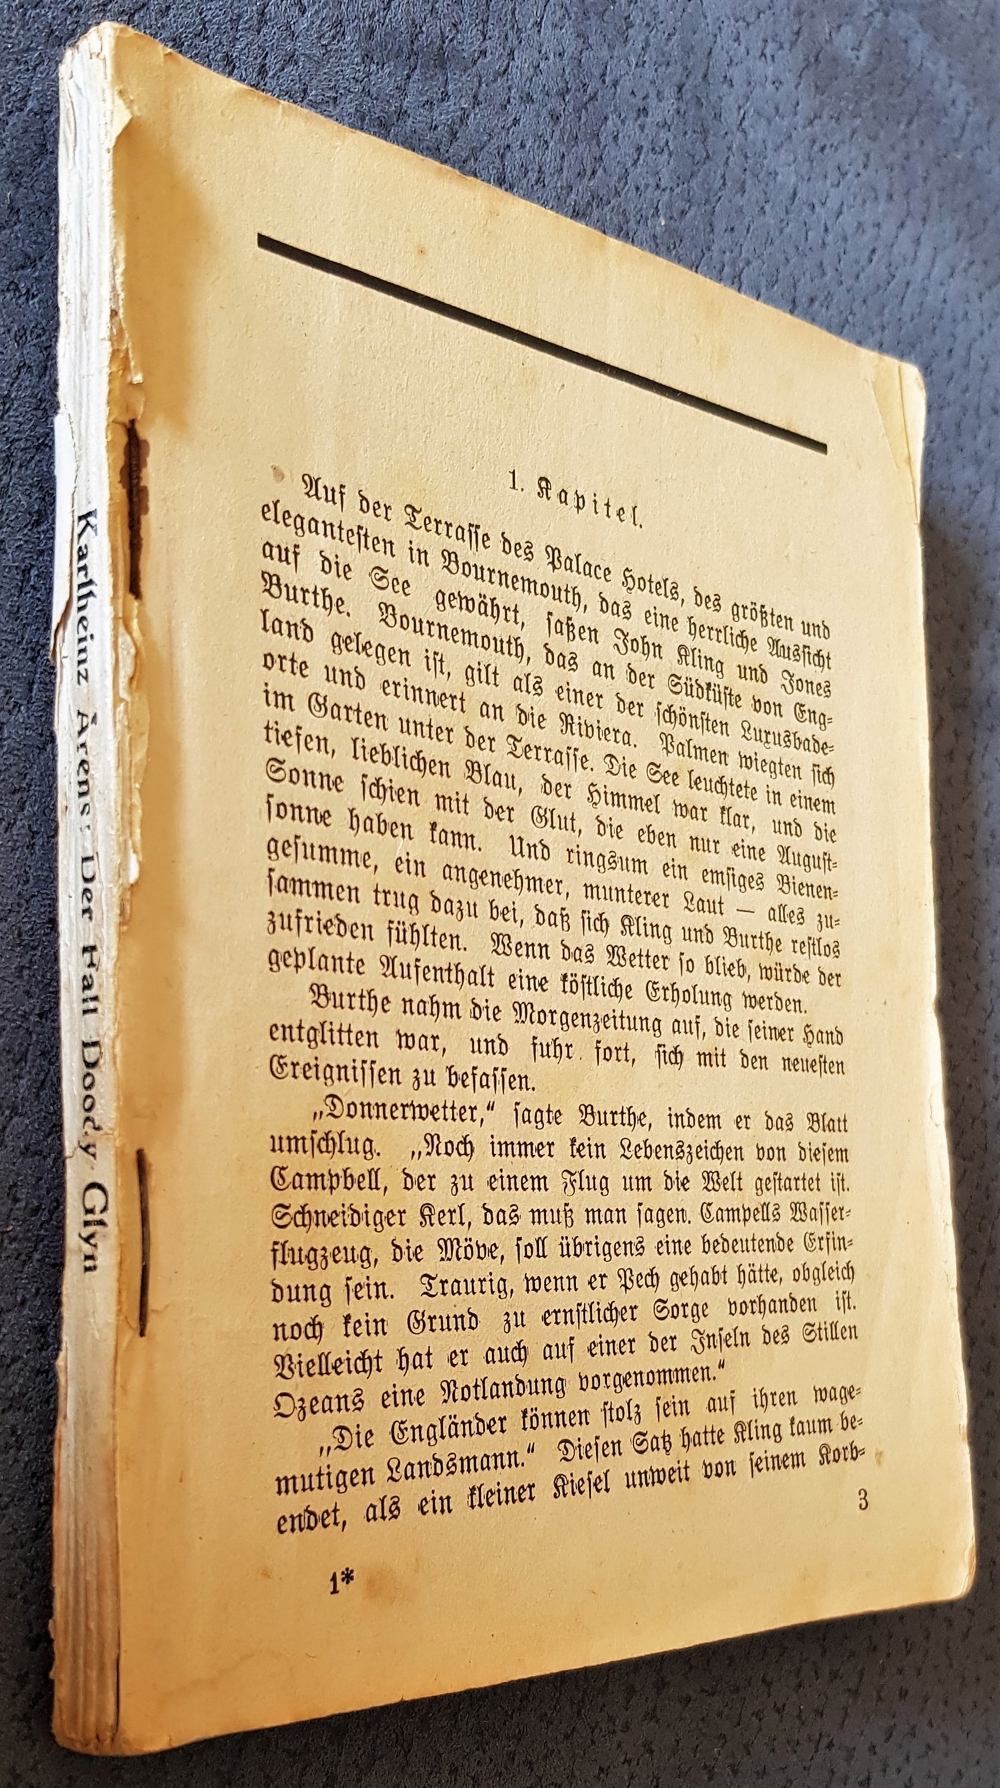 1 Taschenbuch "Der Fall Doody Glyn", von Karlheinz Arens aus dem Jahren um 1920